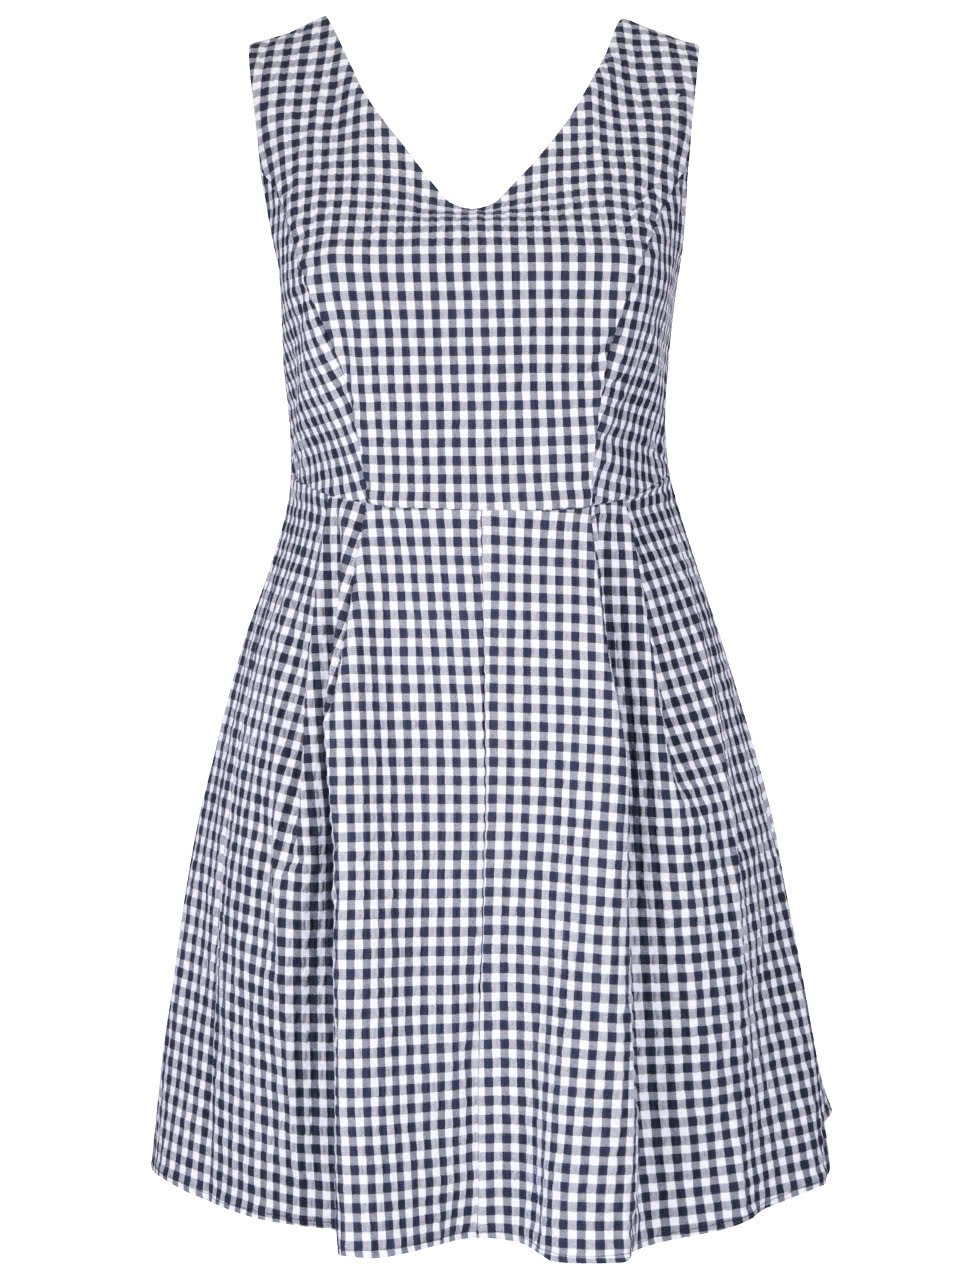 Modro-bílé vzorované šaty Dorothy Perkins Curve